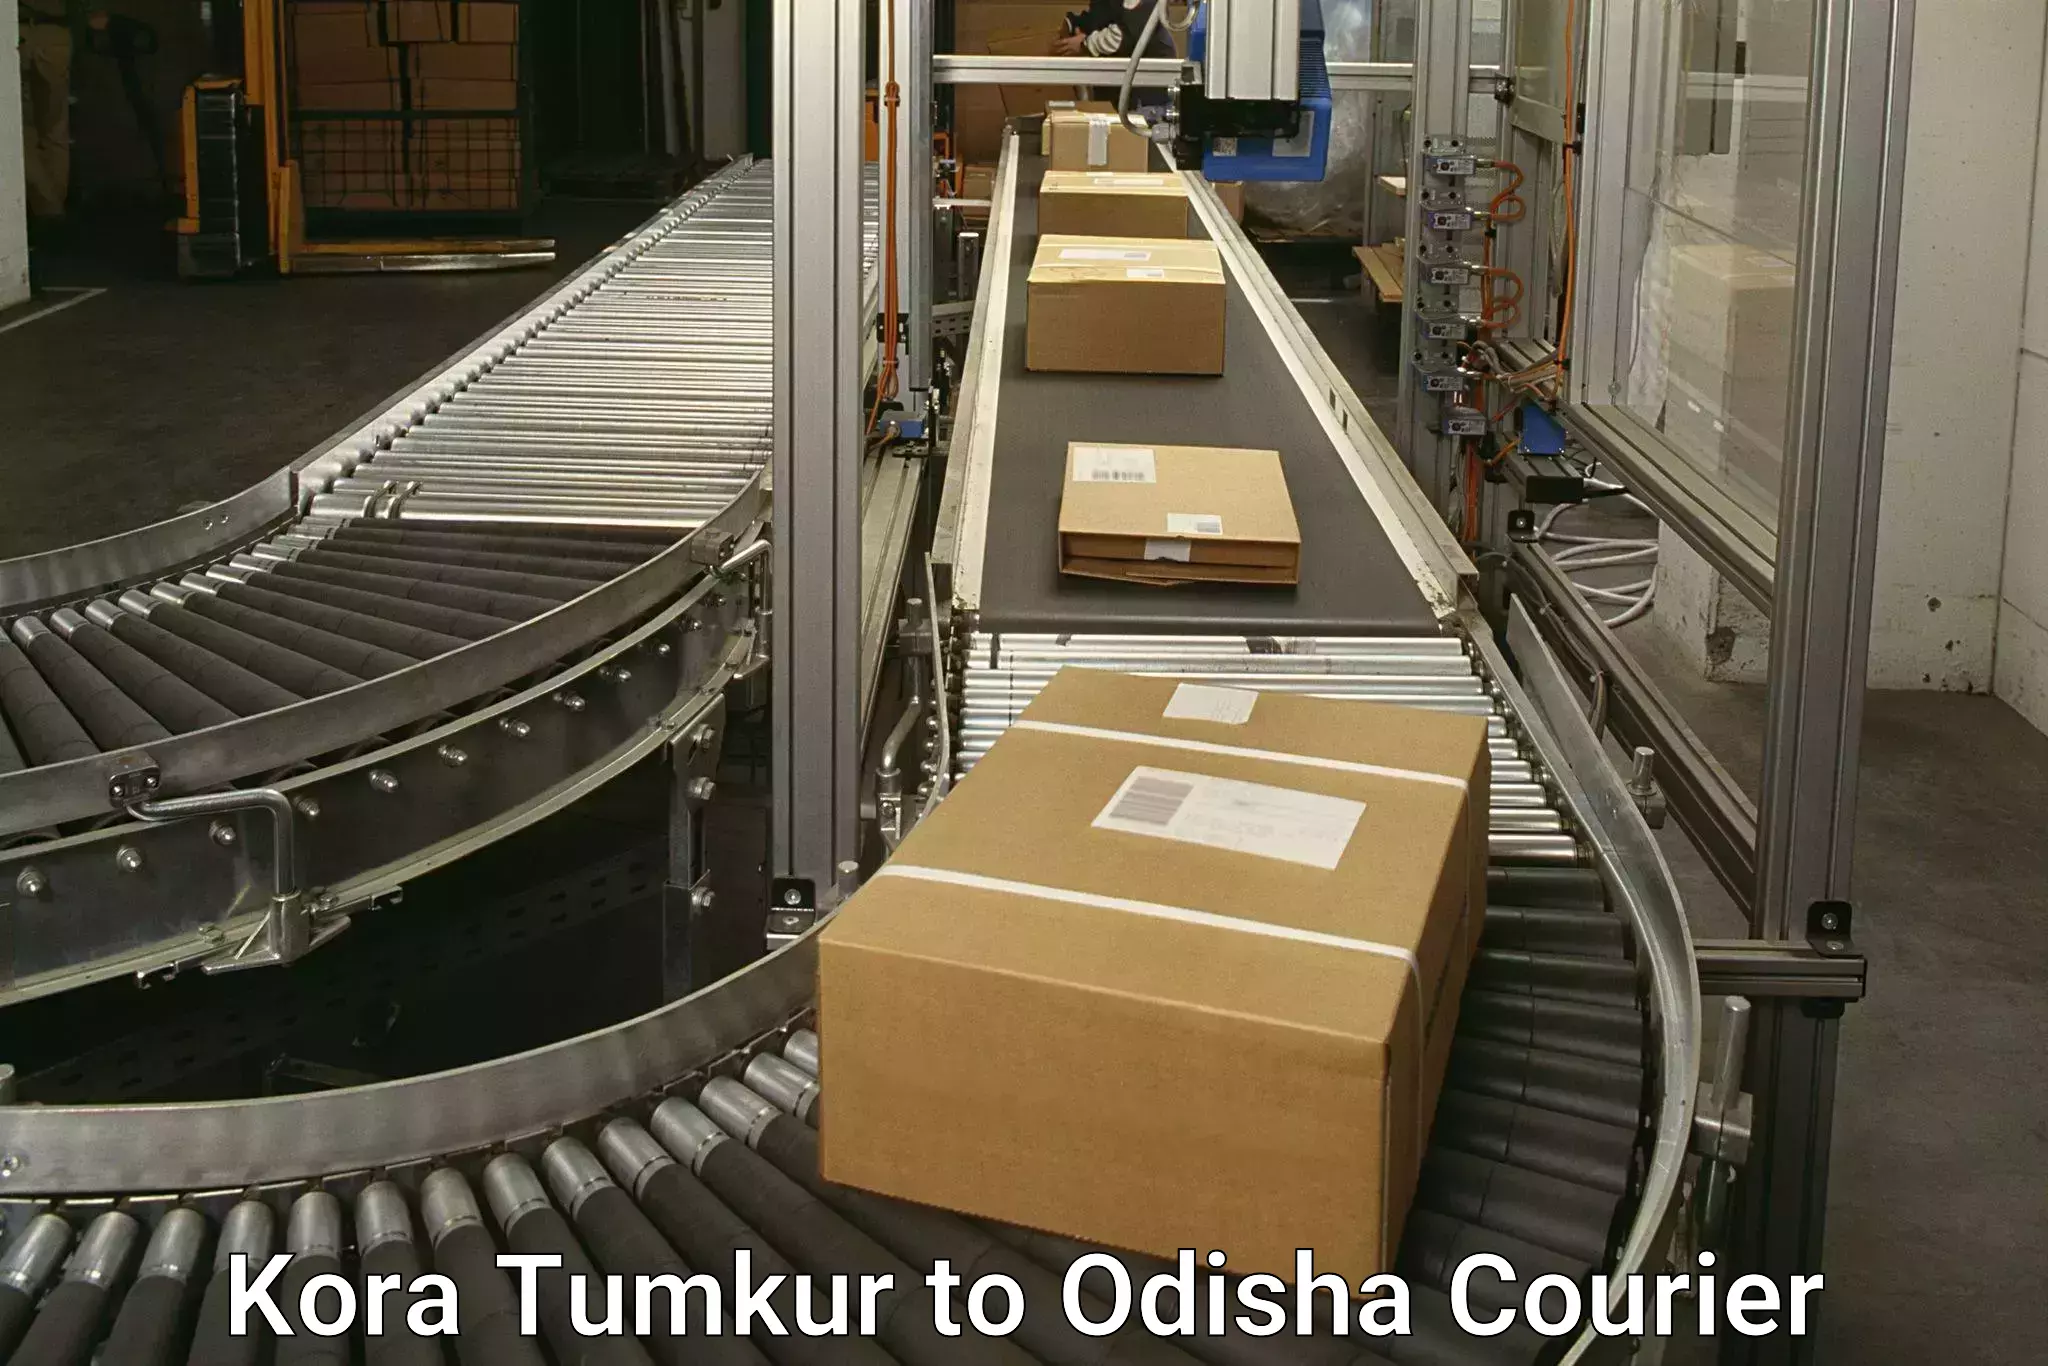 Courier service efficiency Kora Tumkur to Sukinda